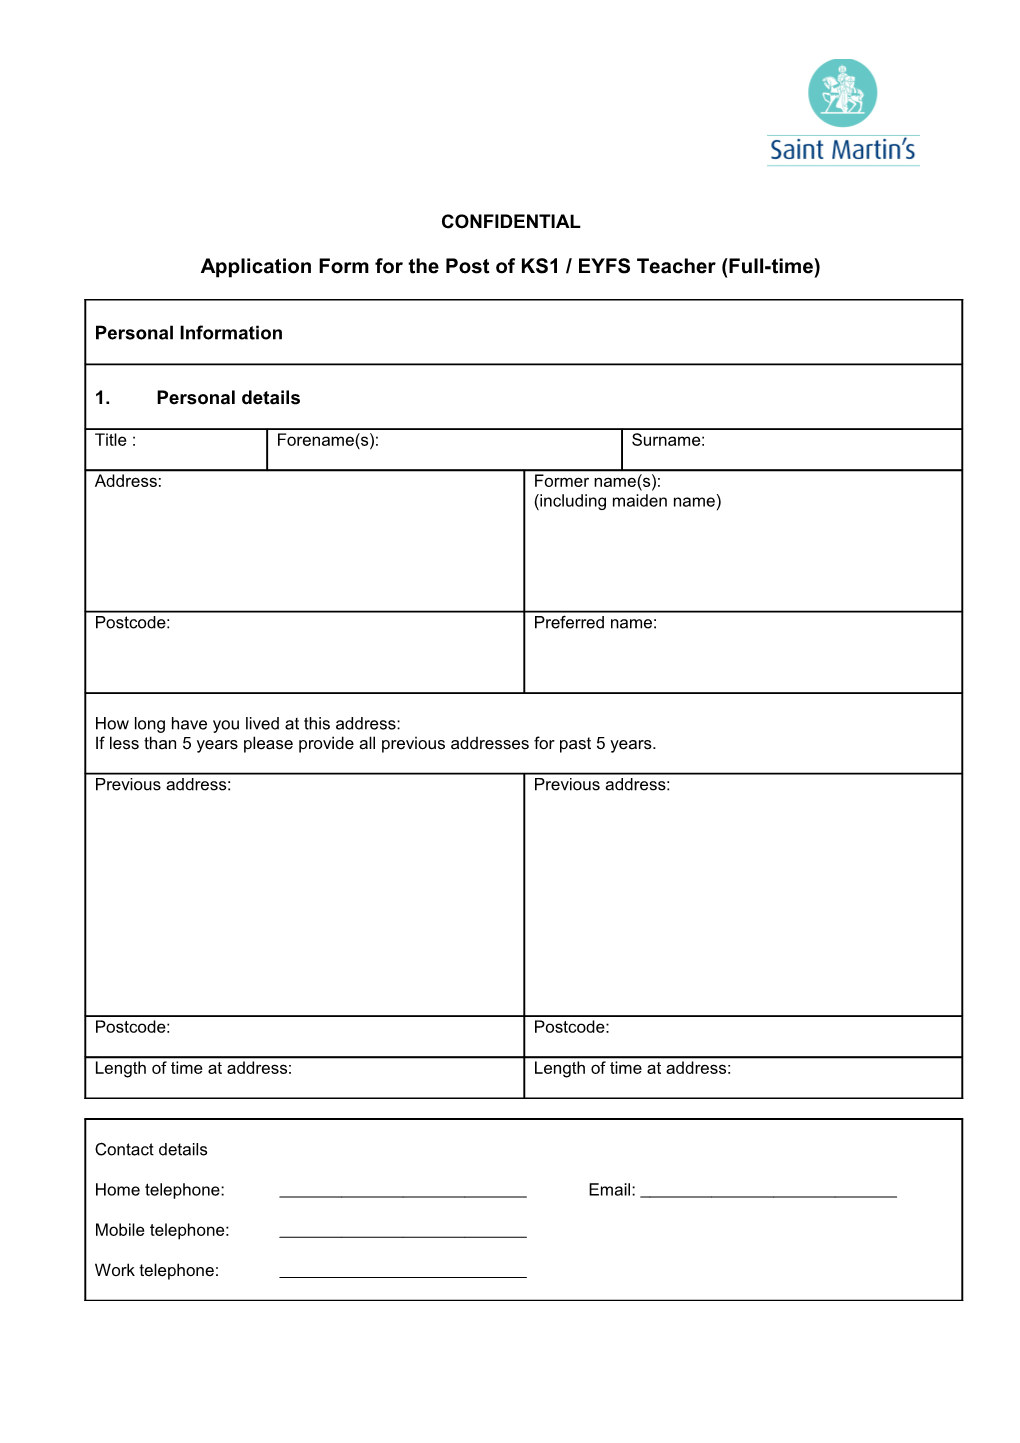 Application Form for the Post of KS1 / EYFS Teacher (Full-Time)